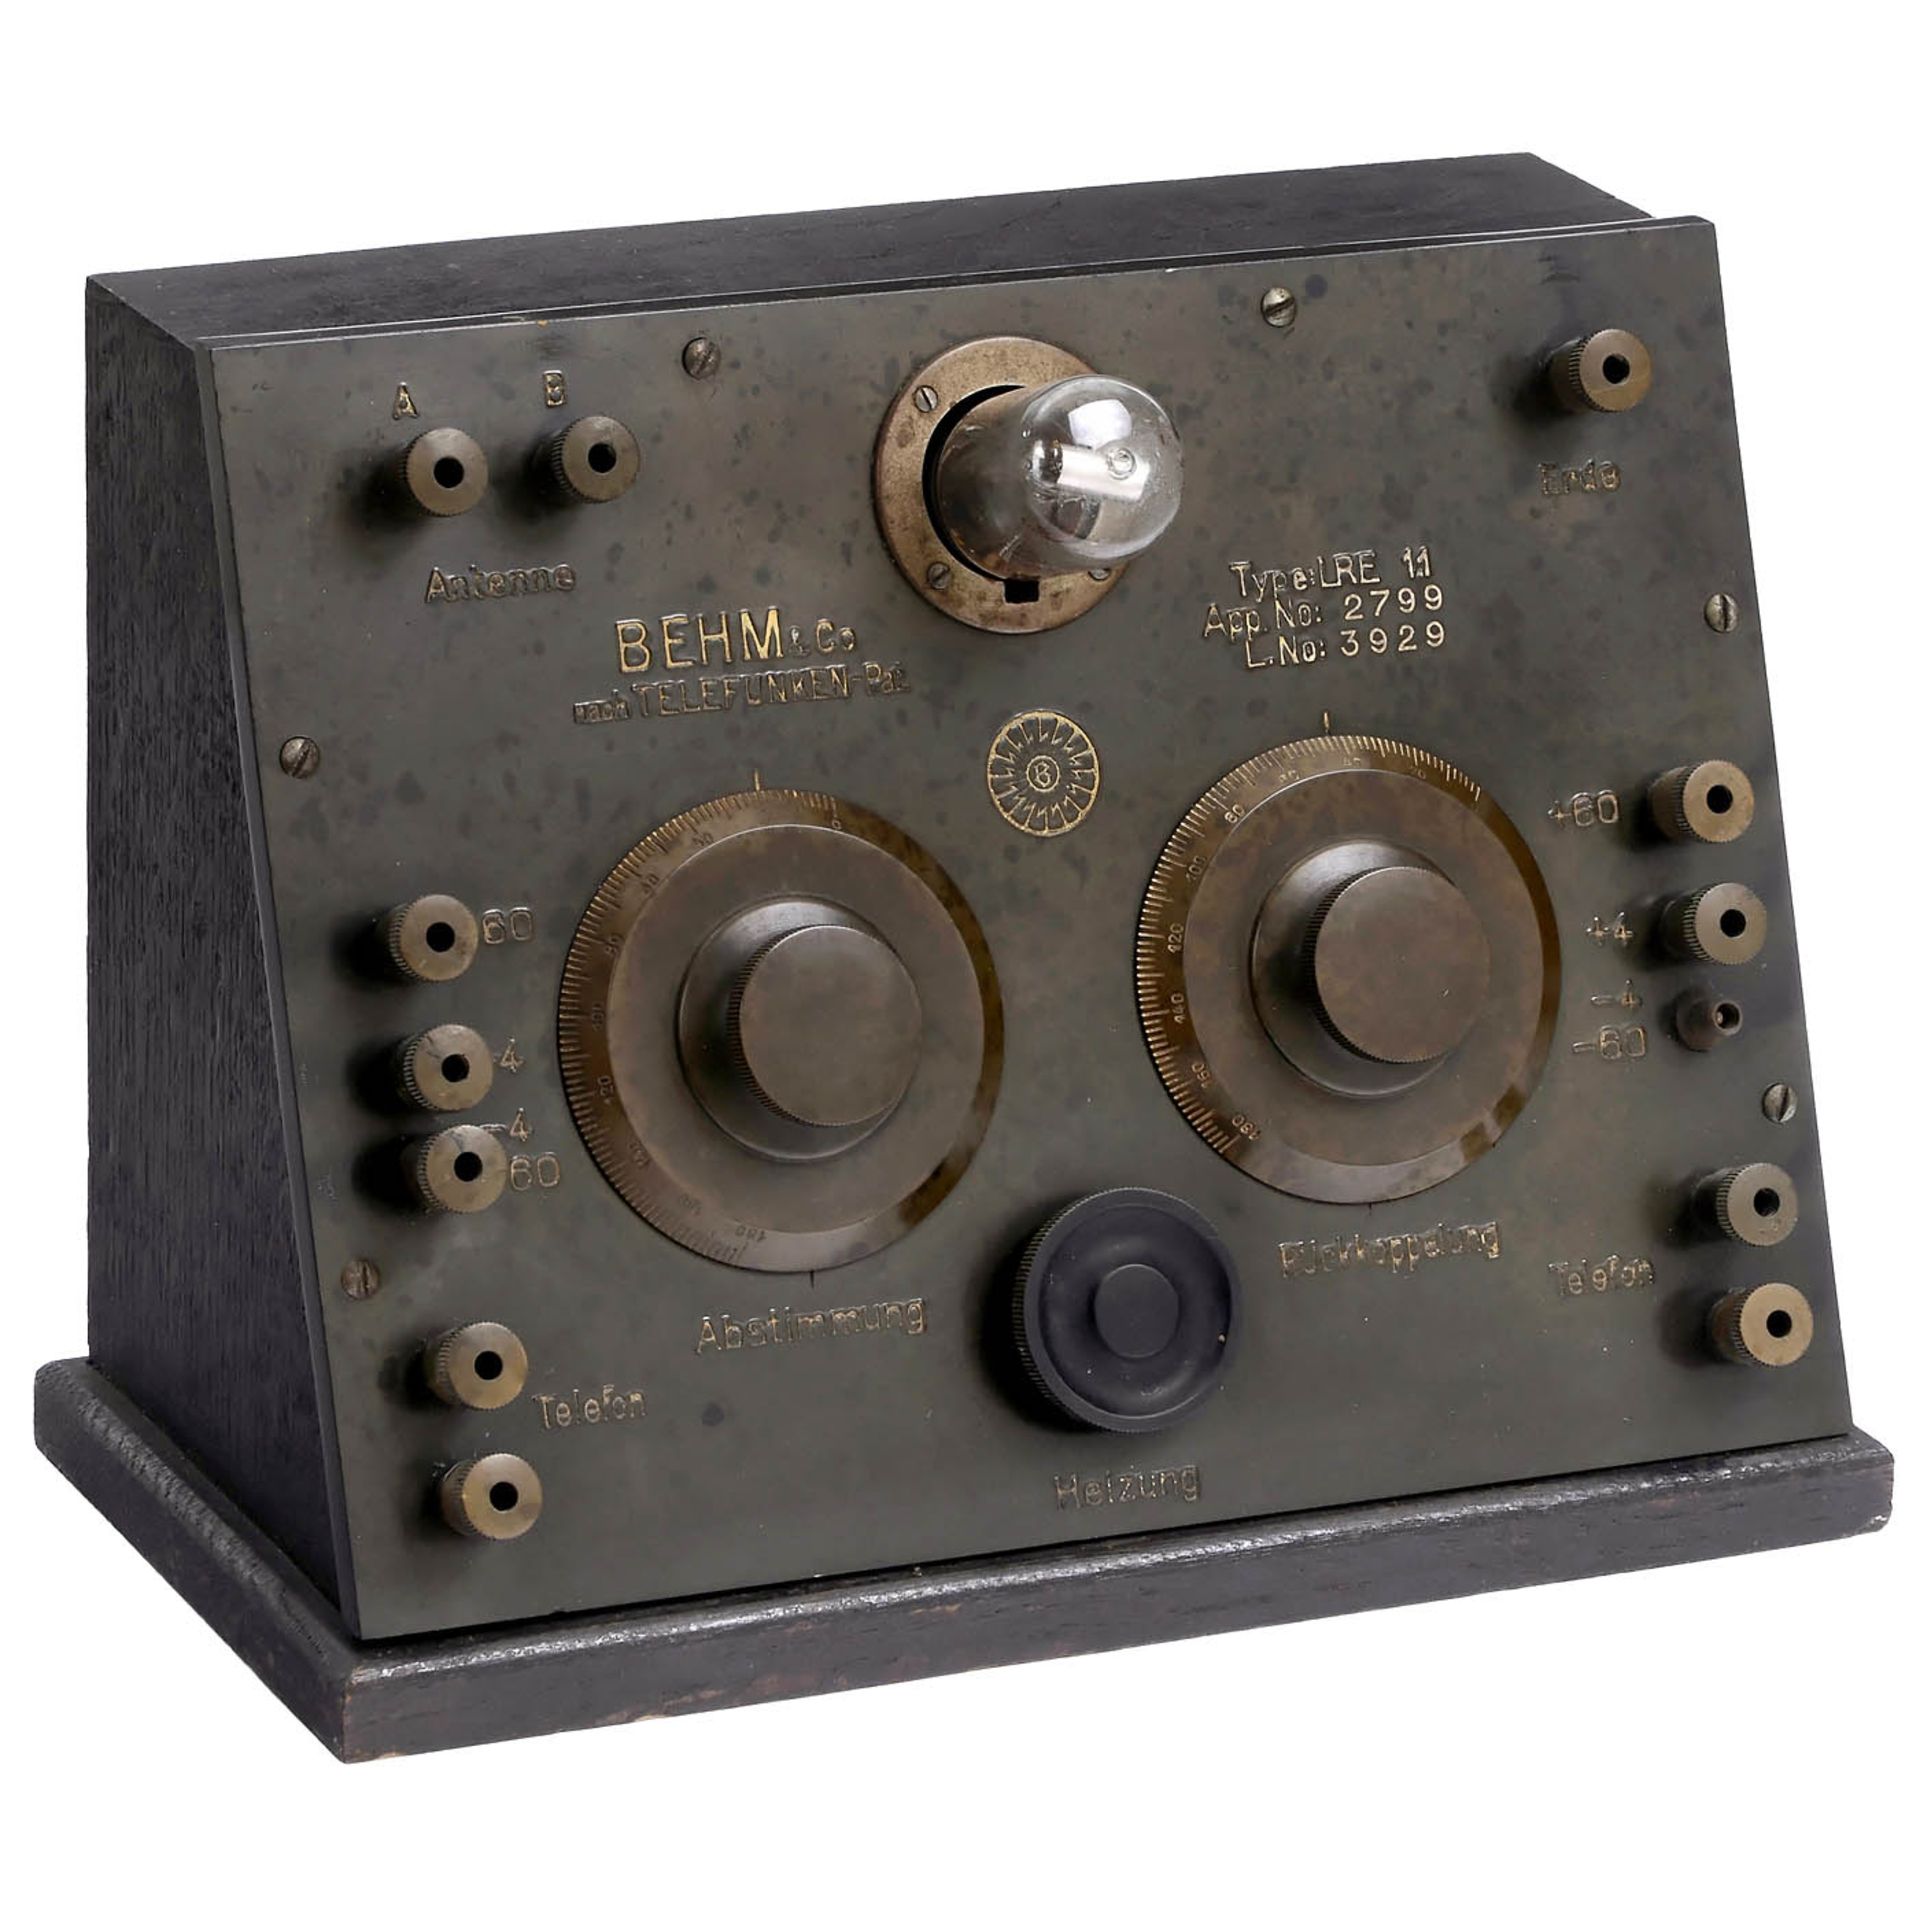 Radioempfänger Behm Modell LRE 11, um 1924 Behm & Co, Radio-Gesellschaft, Berlin. Apparat Nr.